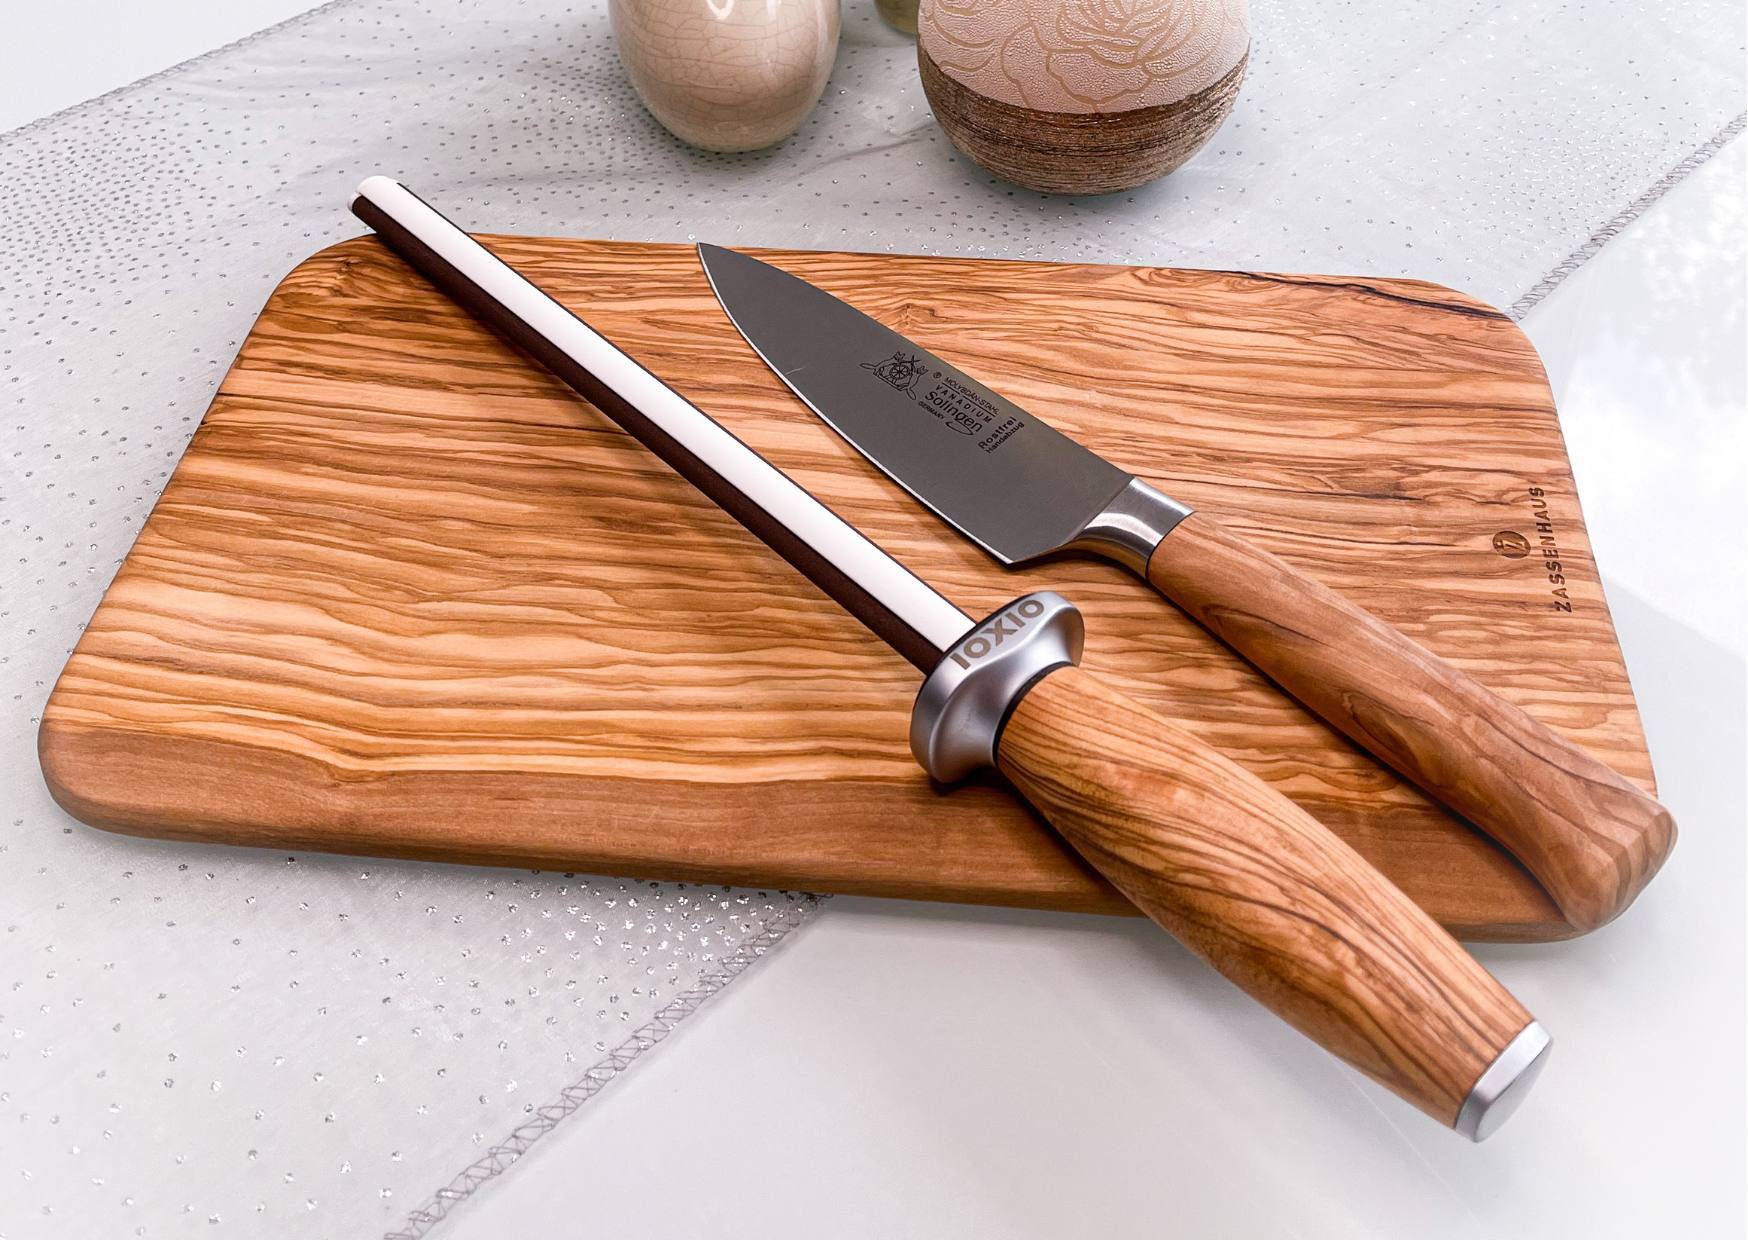 Messer schärfen Anleitung: Schleifanleitung für europäische und japanische Messer